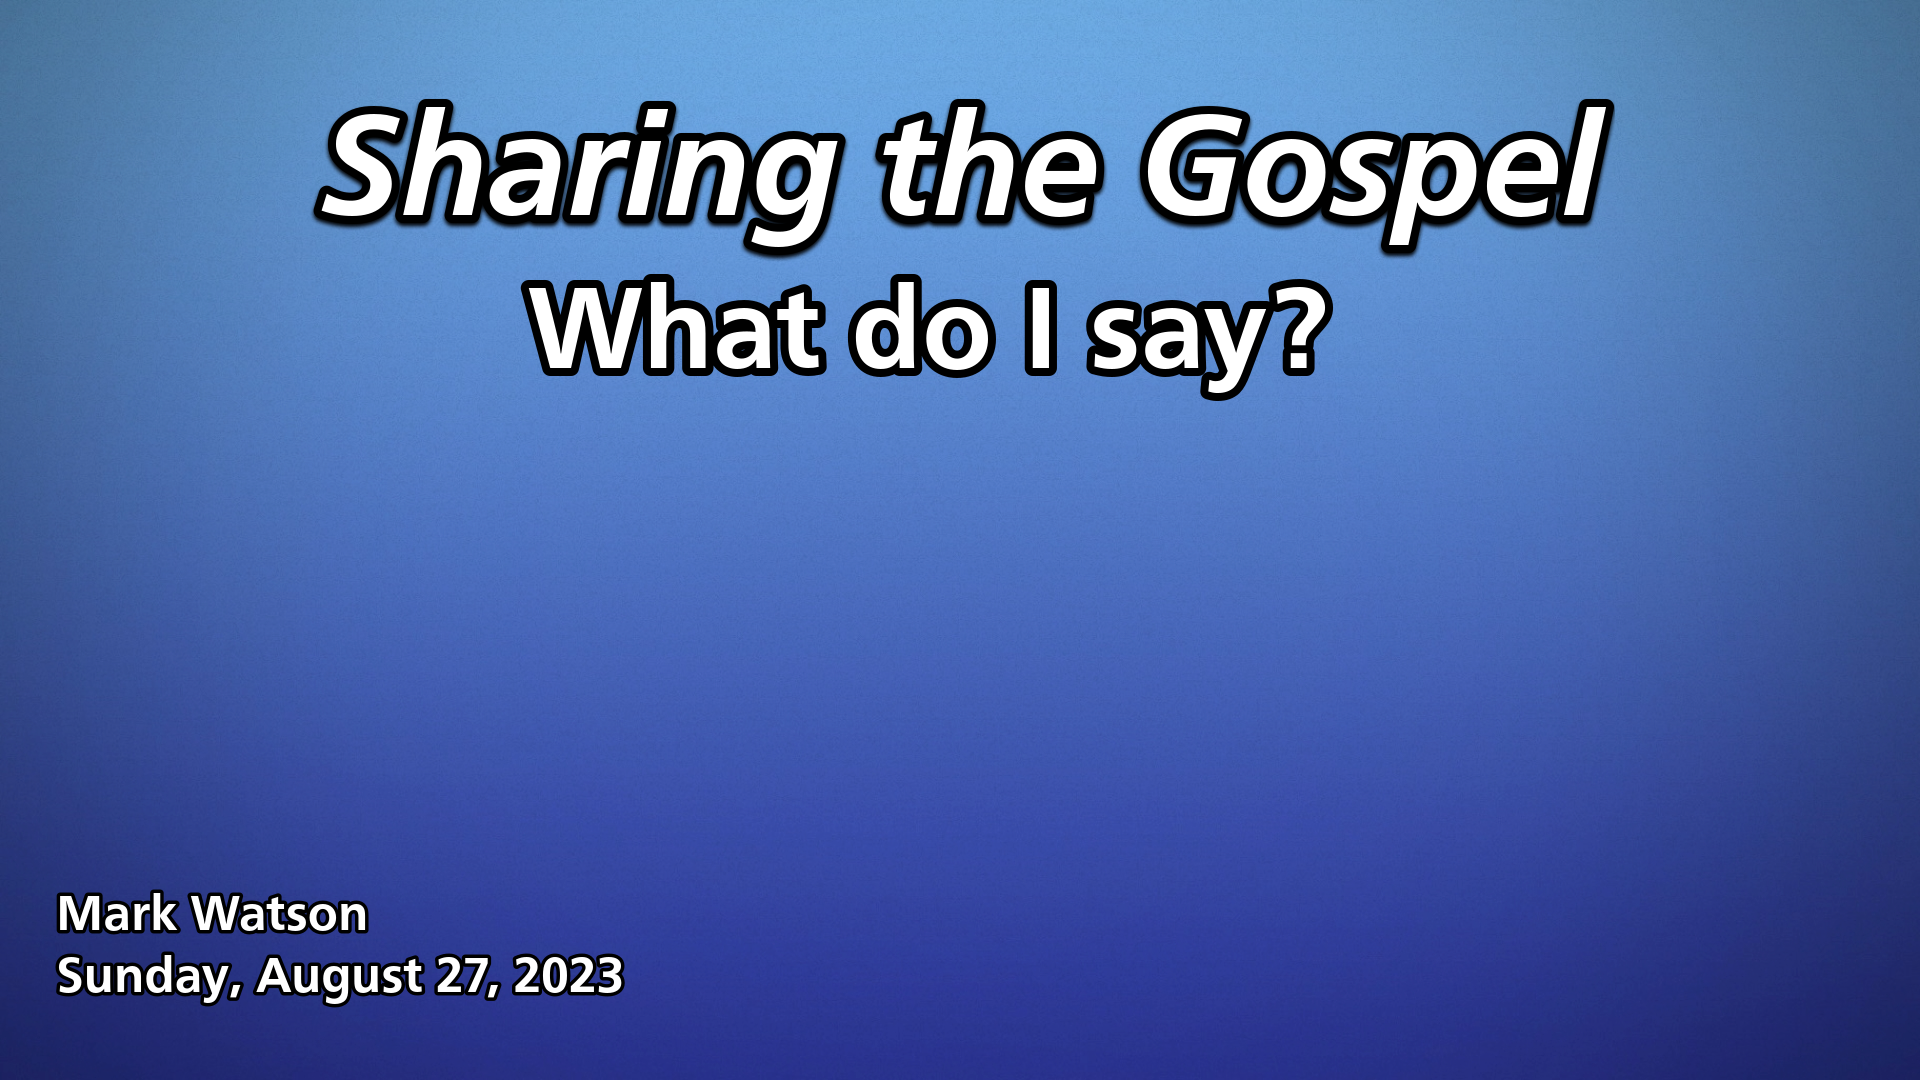 "Sharing the Gospel"